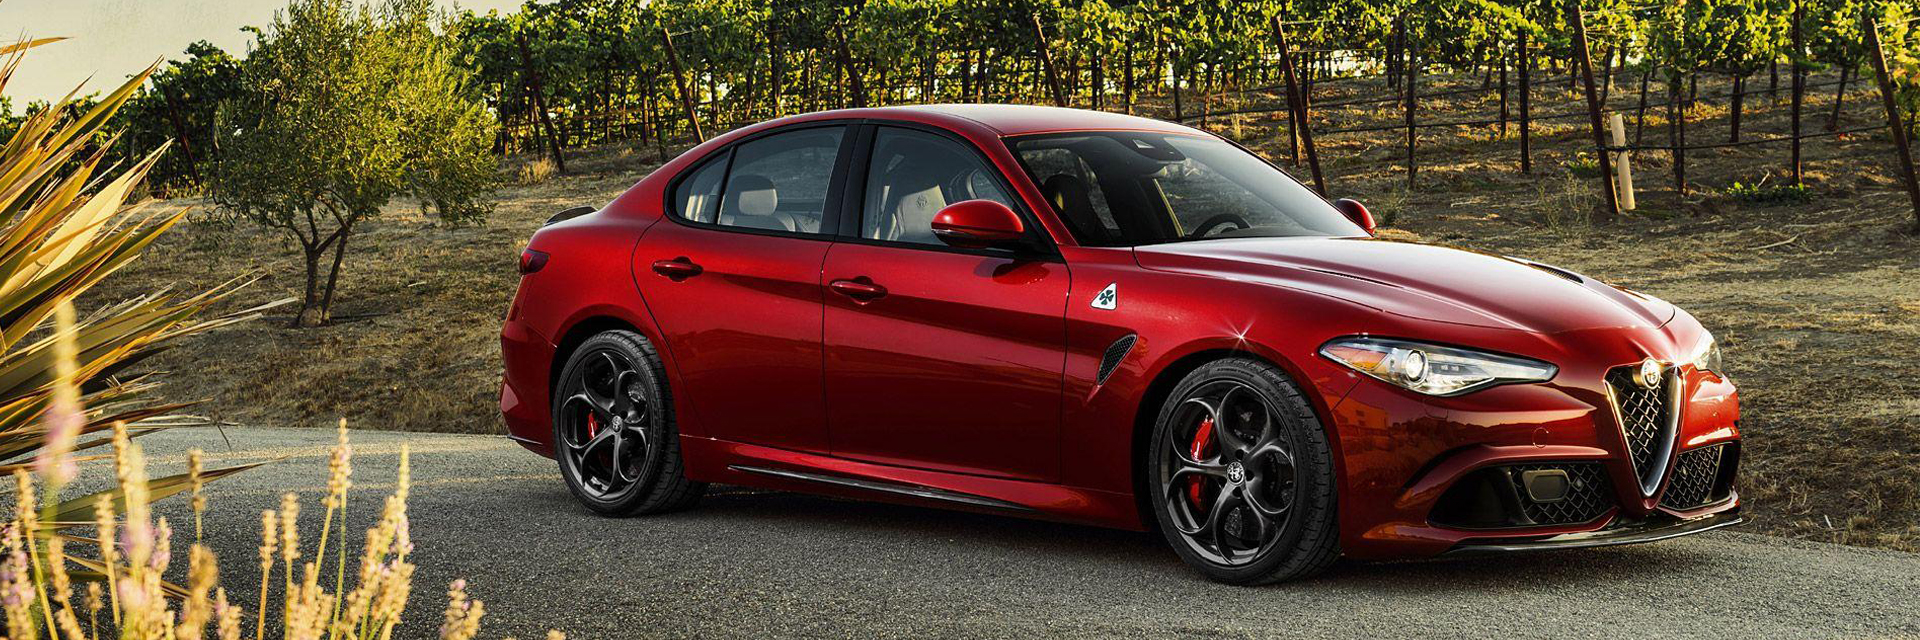 Alfa Romeo Giulia - carros novos, carros km0, carros serviço, carros usados